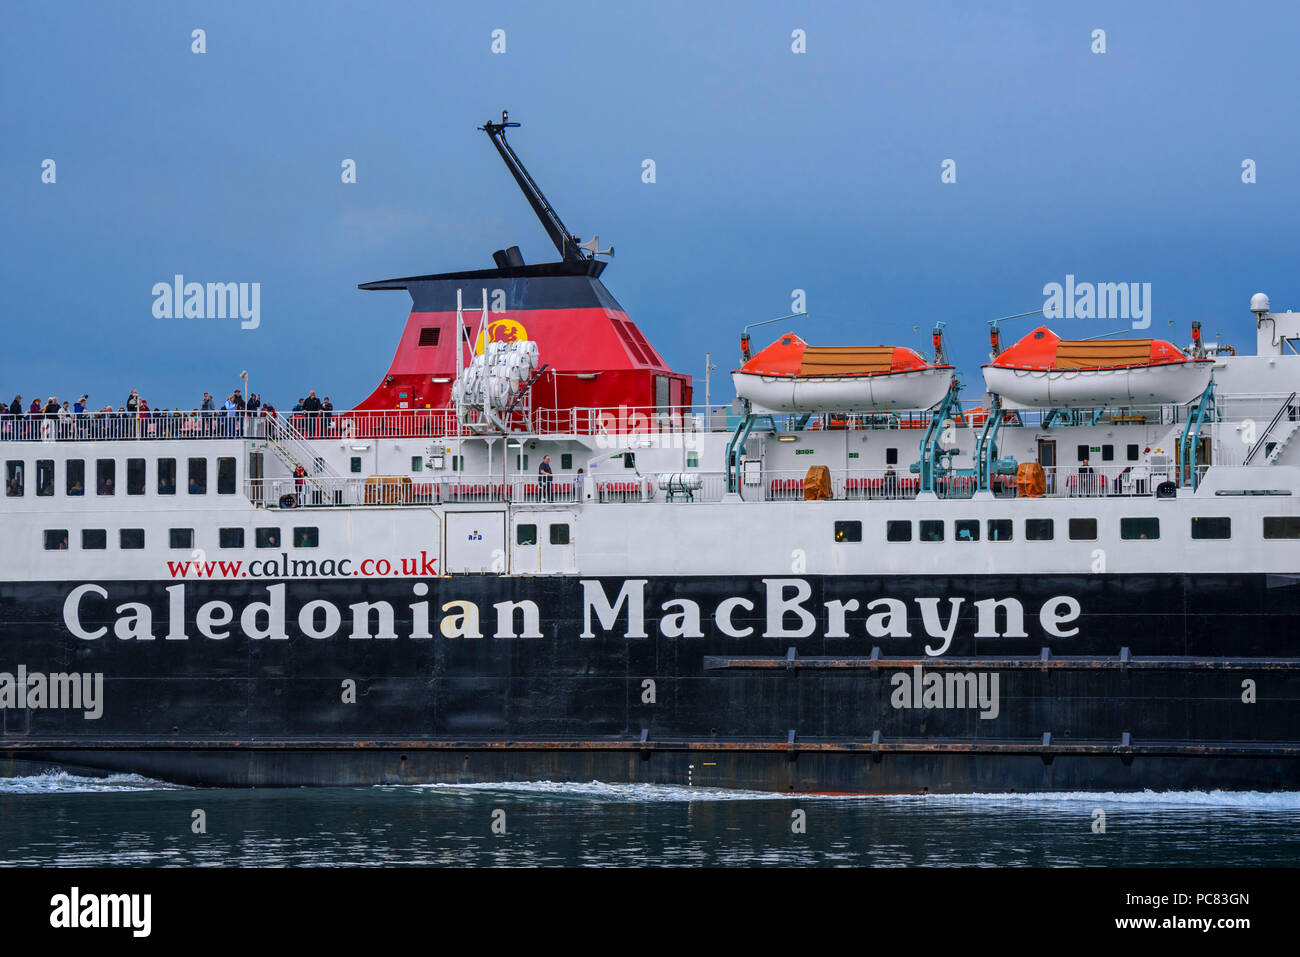 I passeggeri sul ponte del Caledonian MacBrayne ferry boat Isle of Mull / un t-Eilean Muileach di lasciare il porto di Oban Foto Stock